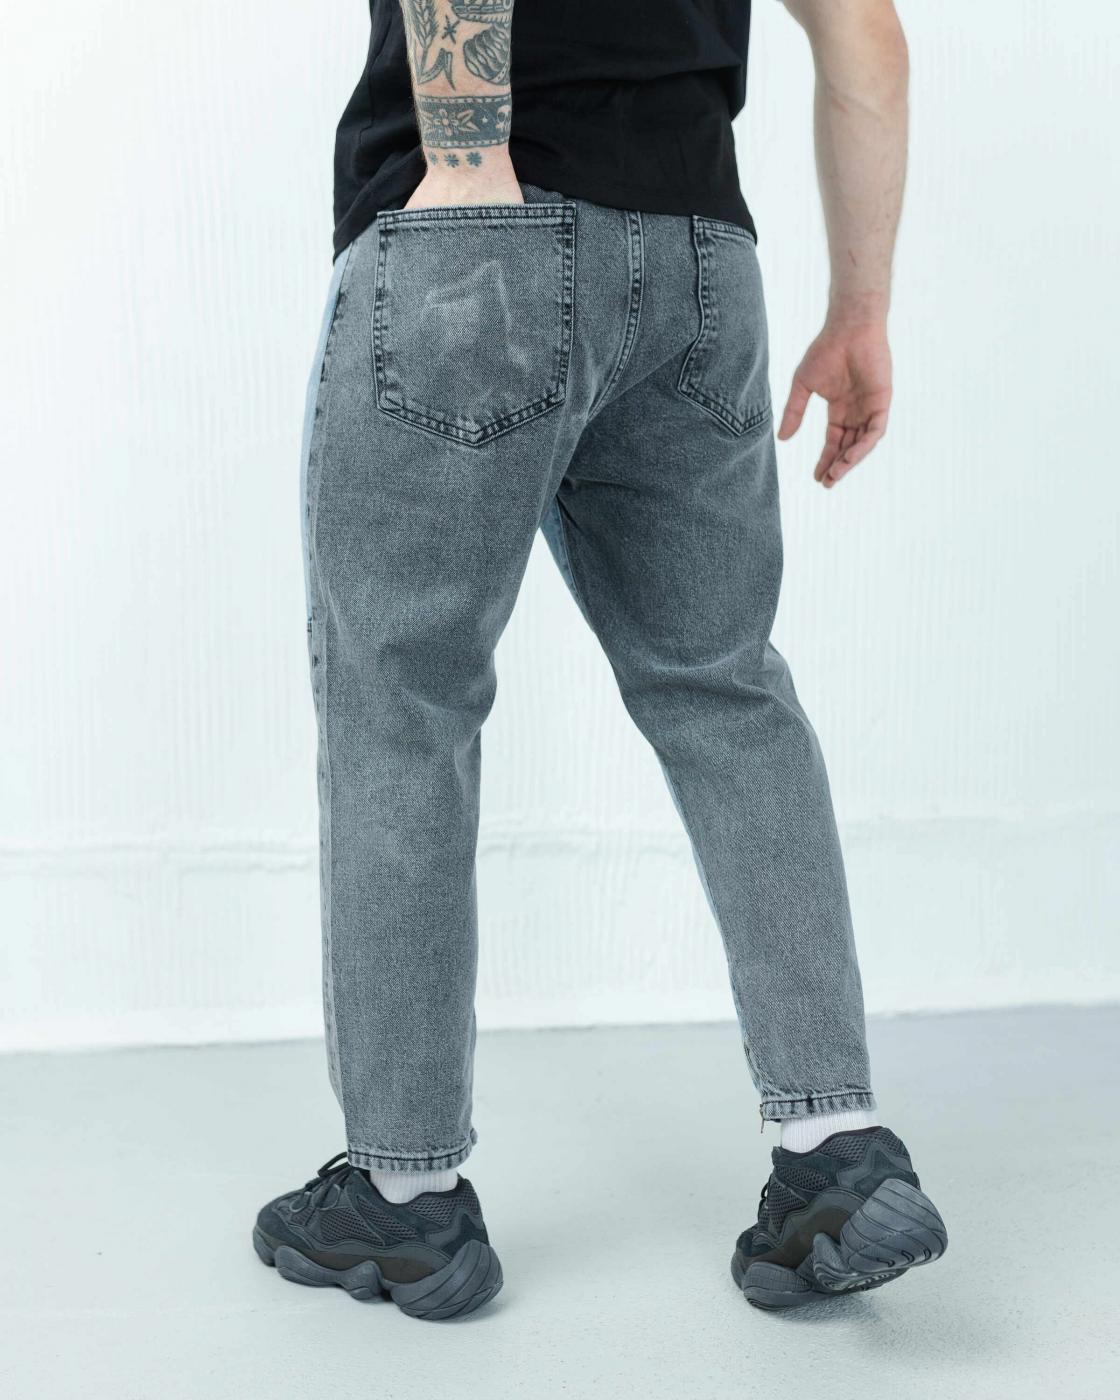 Чоловічі дизайнерські джинси бойфренди BEZET Patched - Фото 2